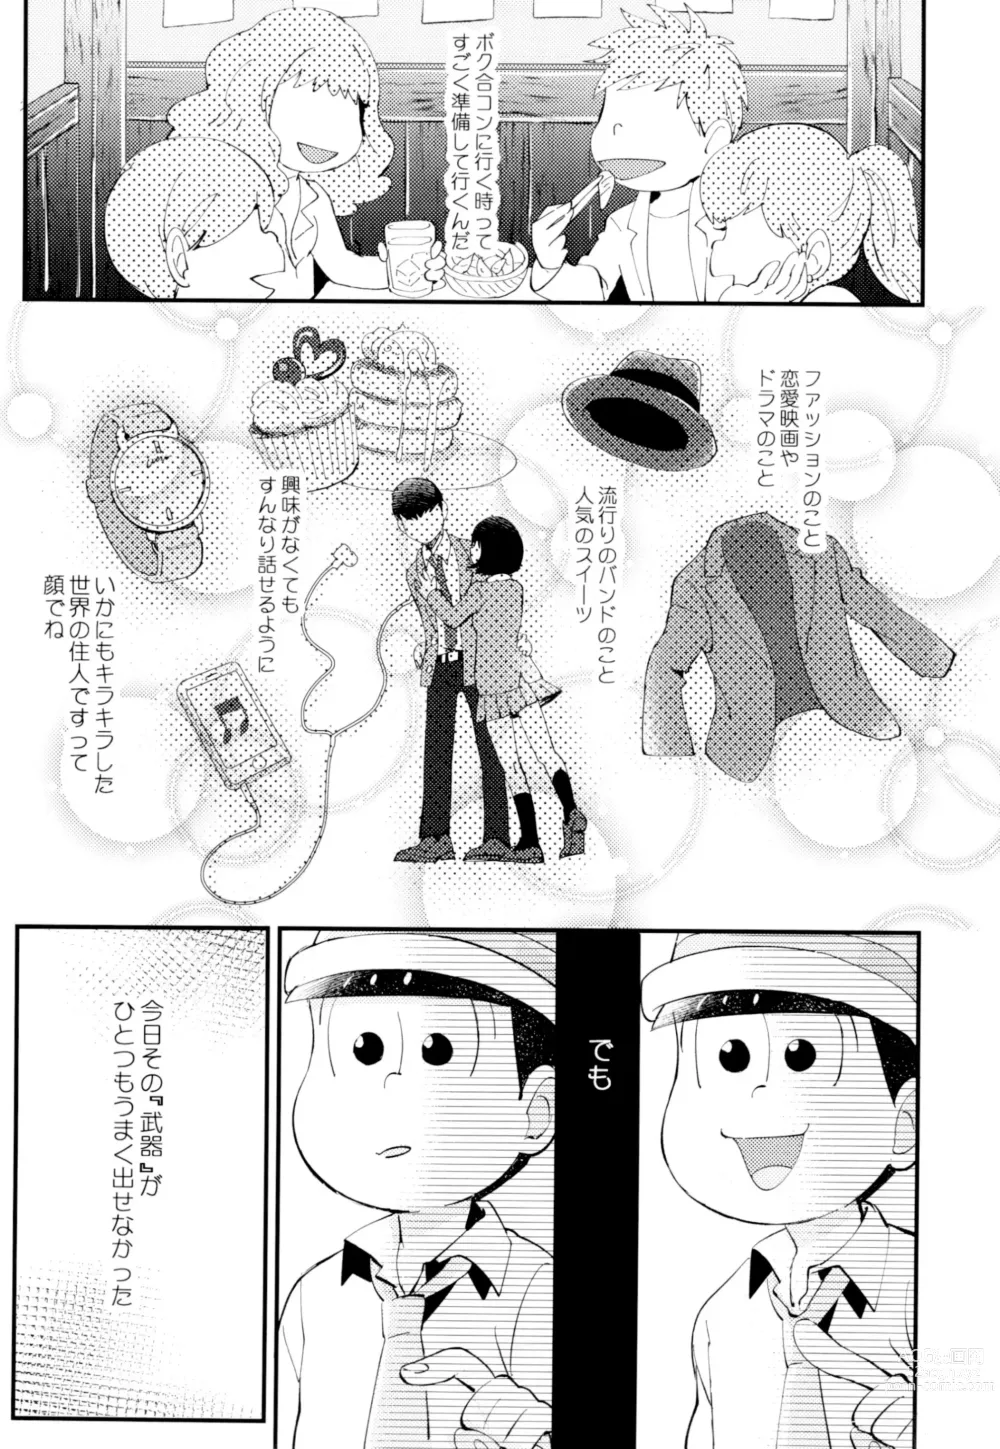 Page 9 of doujinshi Hajimari wa, Yomichi no Kaori.